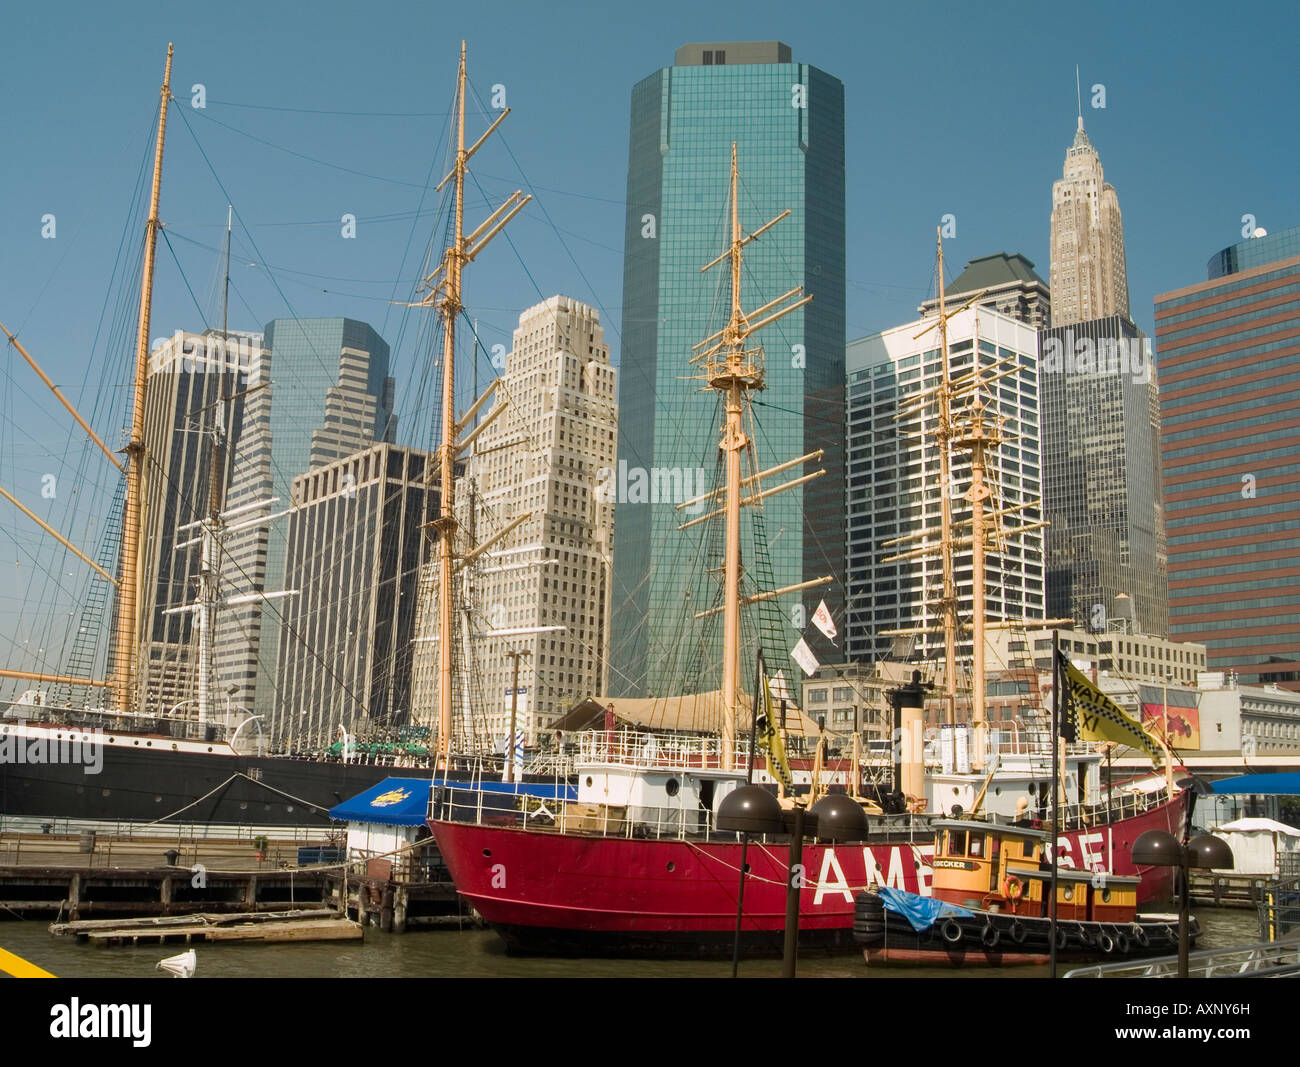 Le contraste entre les anciens bateaux et les gratte-ciel modernes dans la région de South Street Seaport de New York USA Banque D'Images